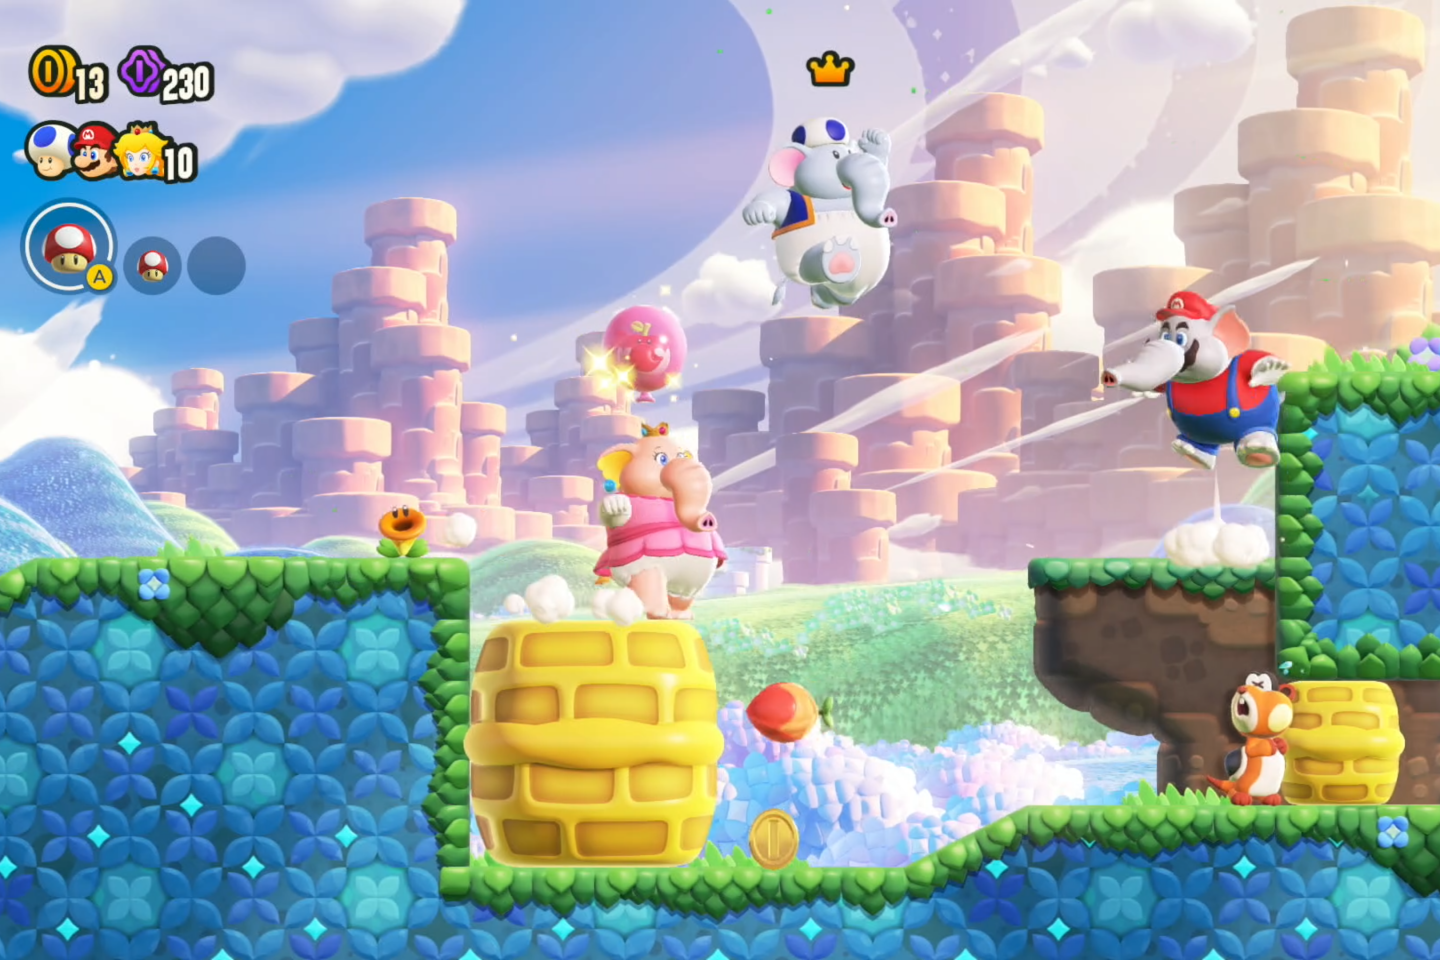 Super Mario Bros. Wonder : Un nouveau Mario 2D annoncé pour le 20